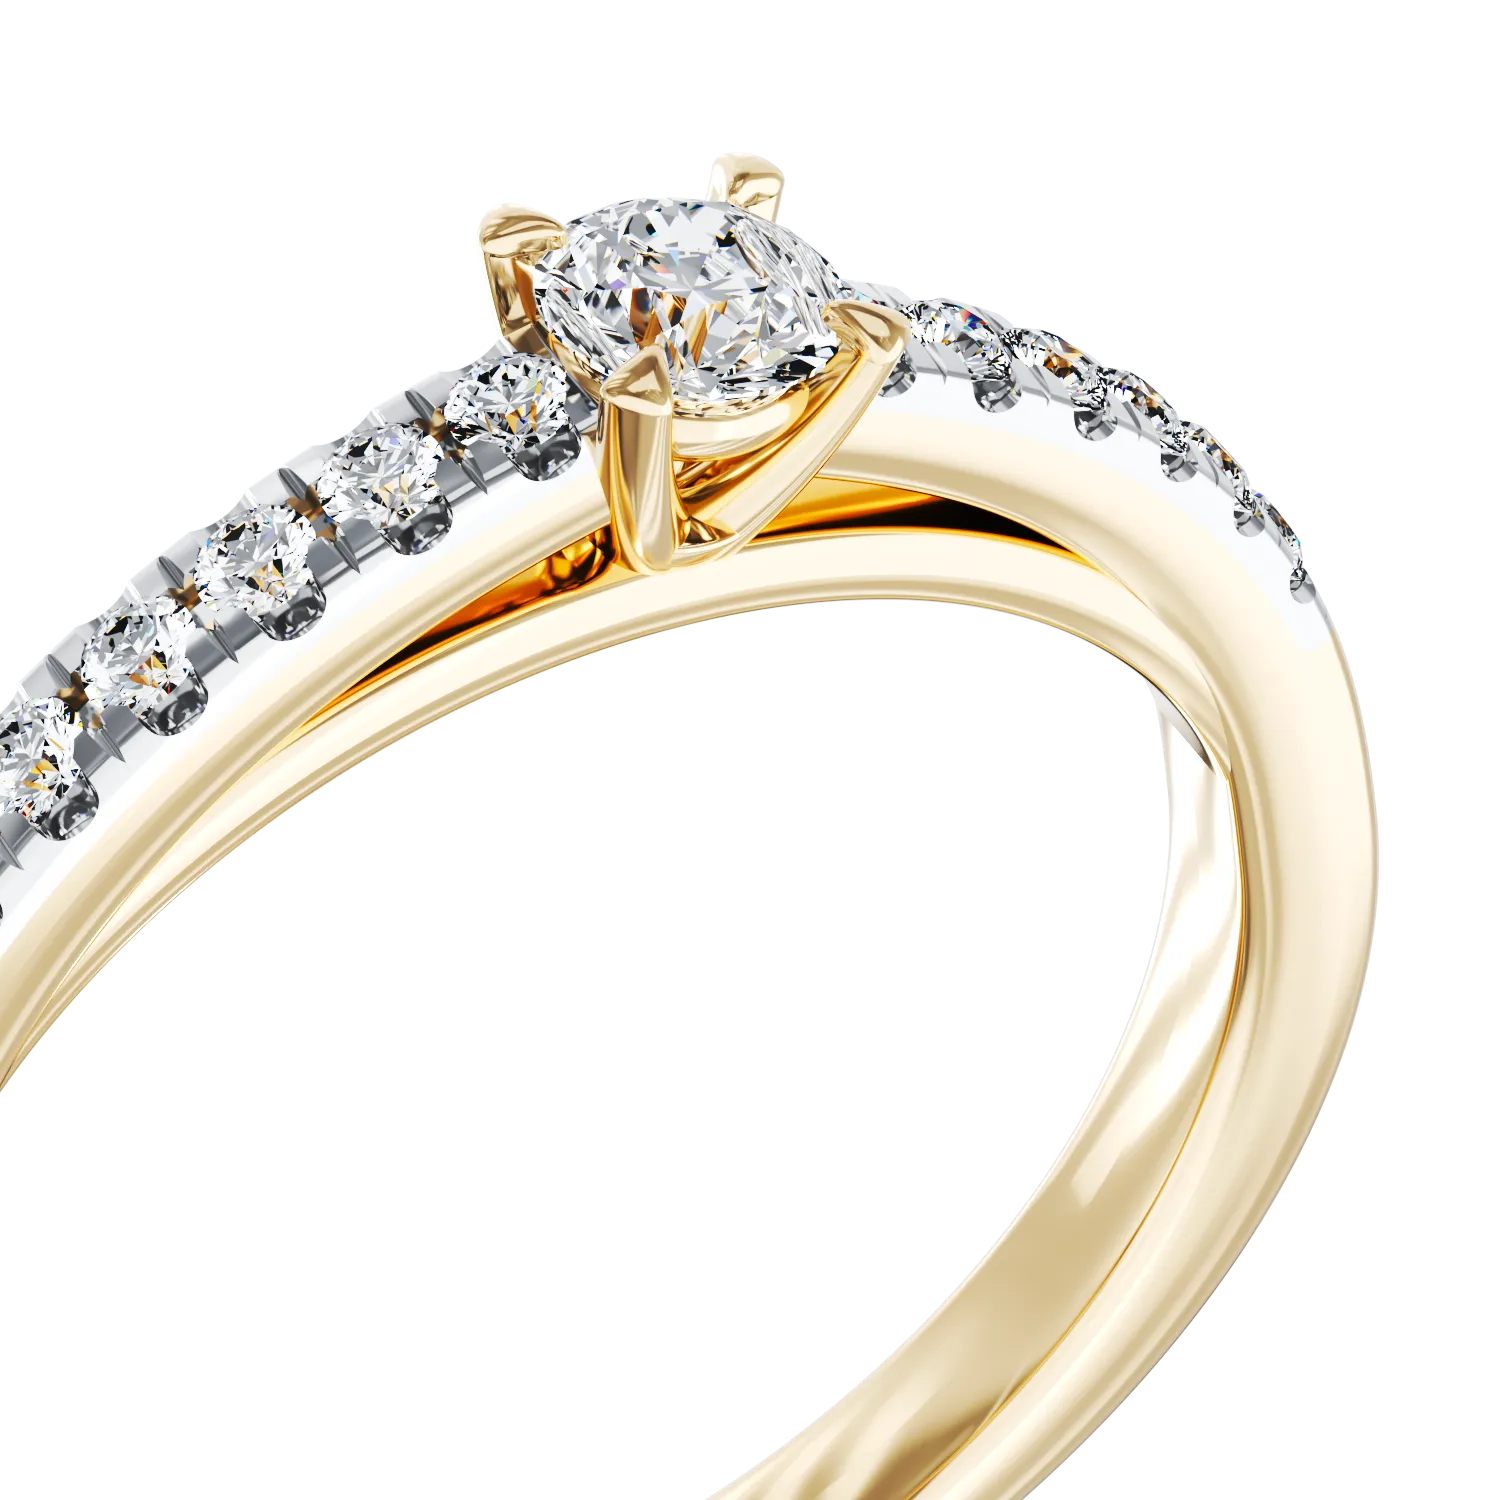 Eljegyzési gyűrű 18K-os sárga aranyból 0,305ct gyémánttal és 0,13ct gyémánttal